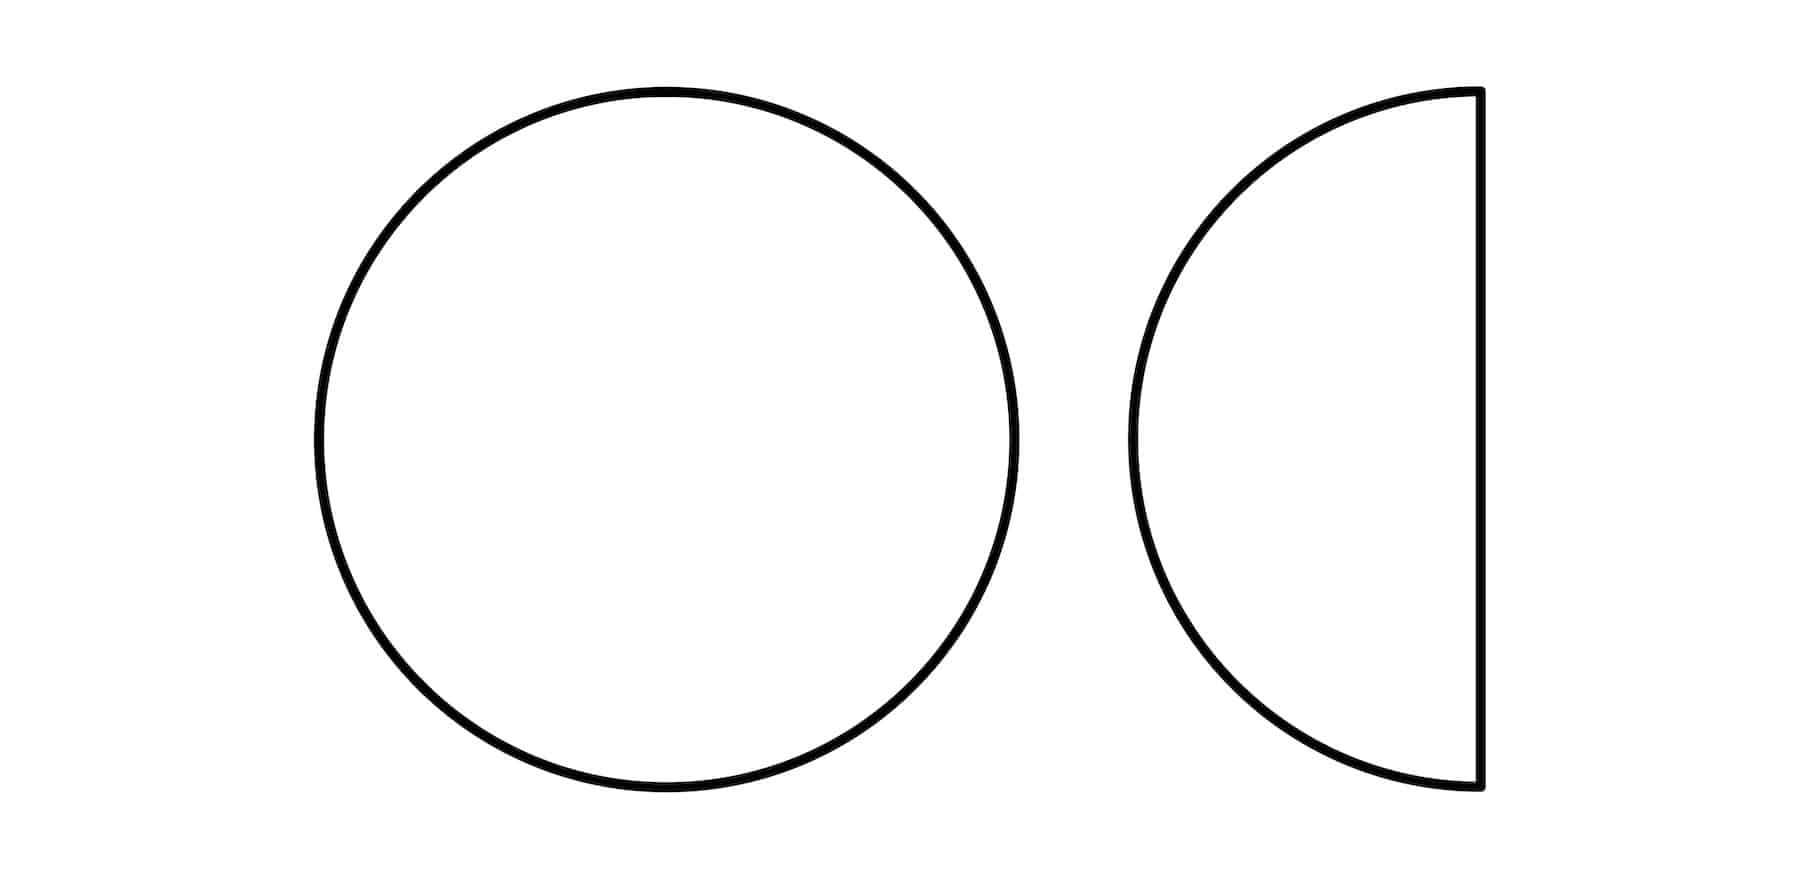 Circles & Half Circles